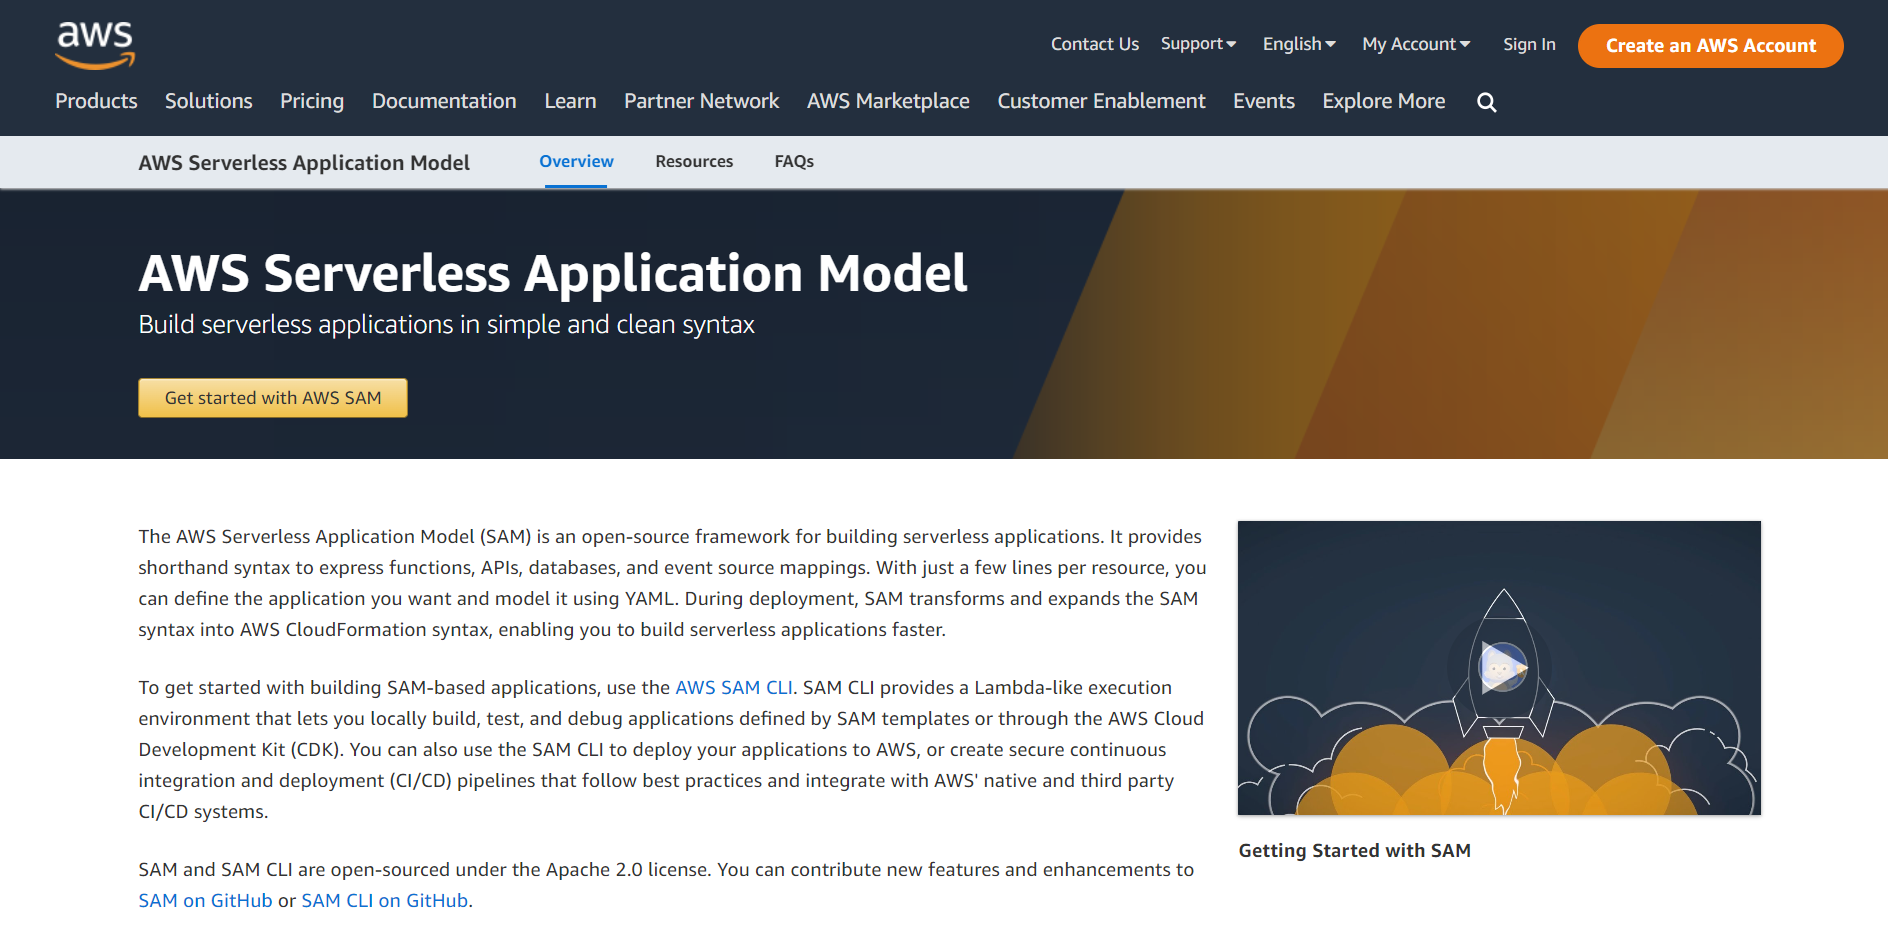 AWS Serverless Application Model